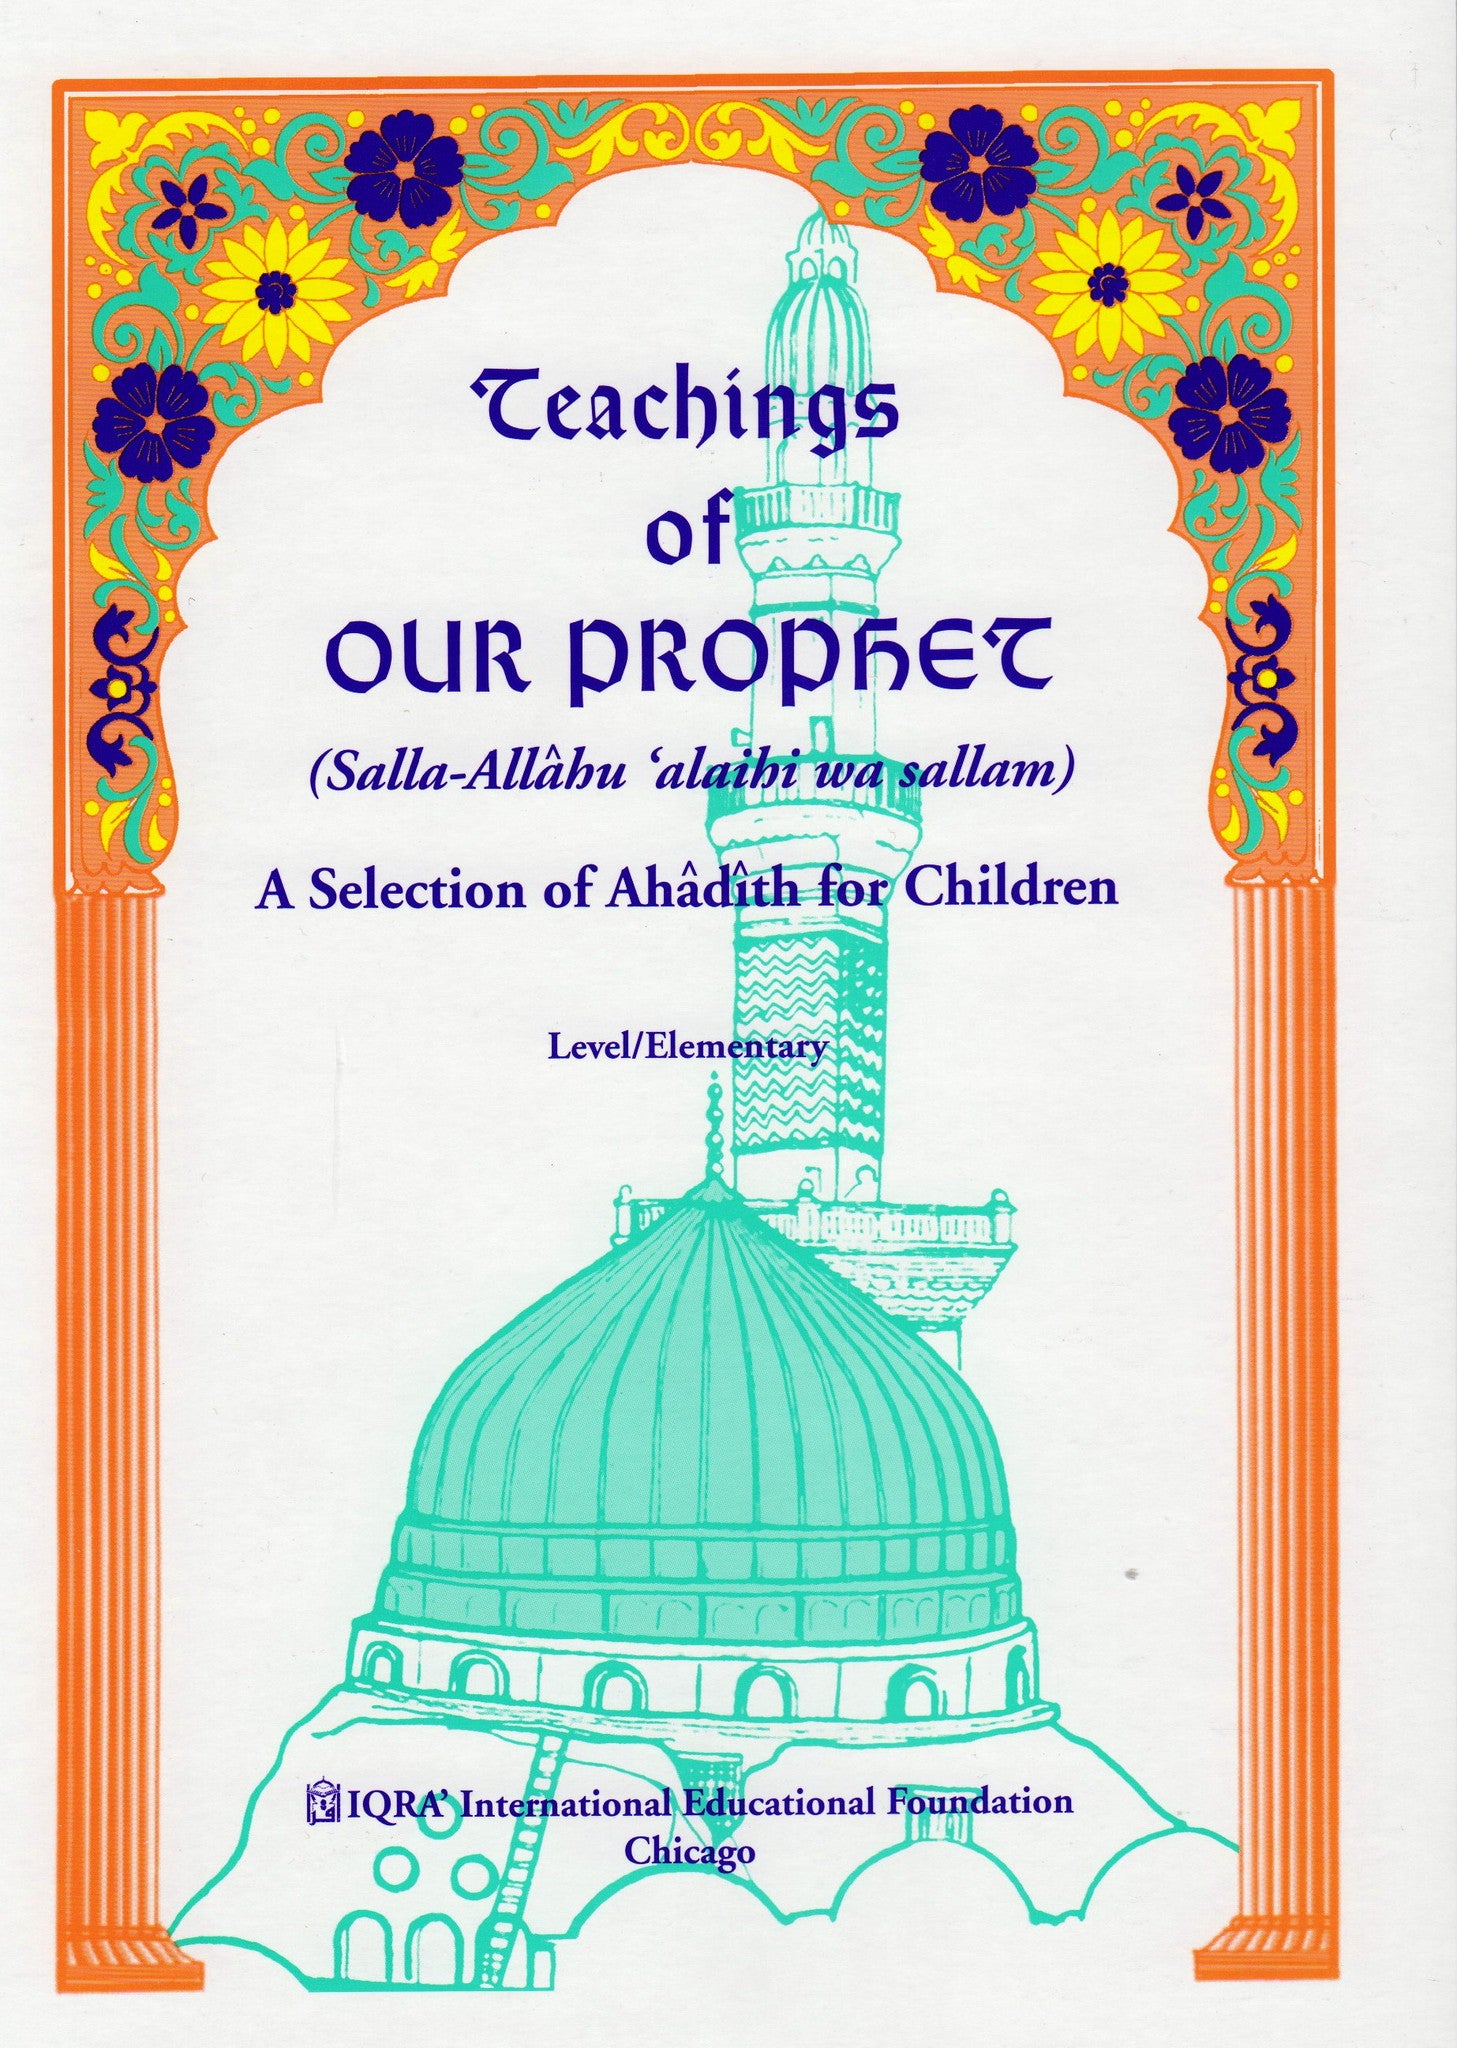 Teachings of Our Prophet: Ahadith